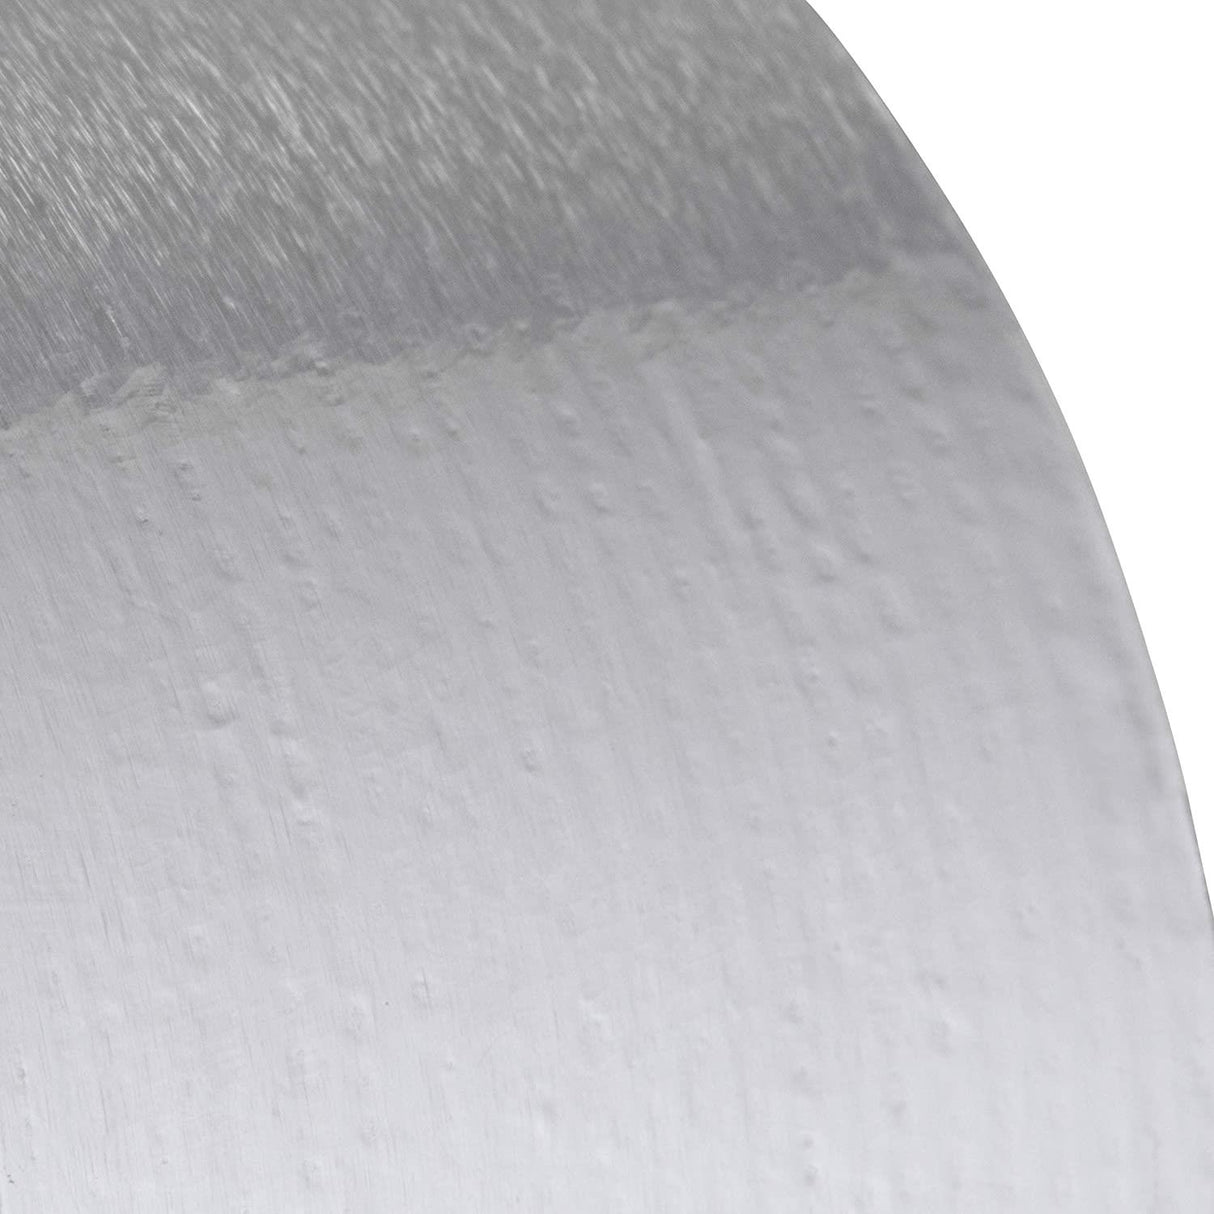 SuperFoil Aluminum Foil Tape 50mm x 30m (6916205346995)